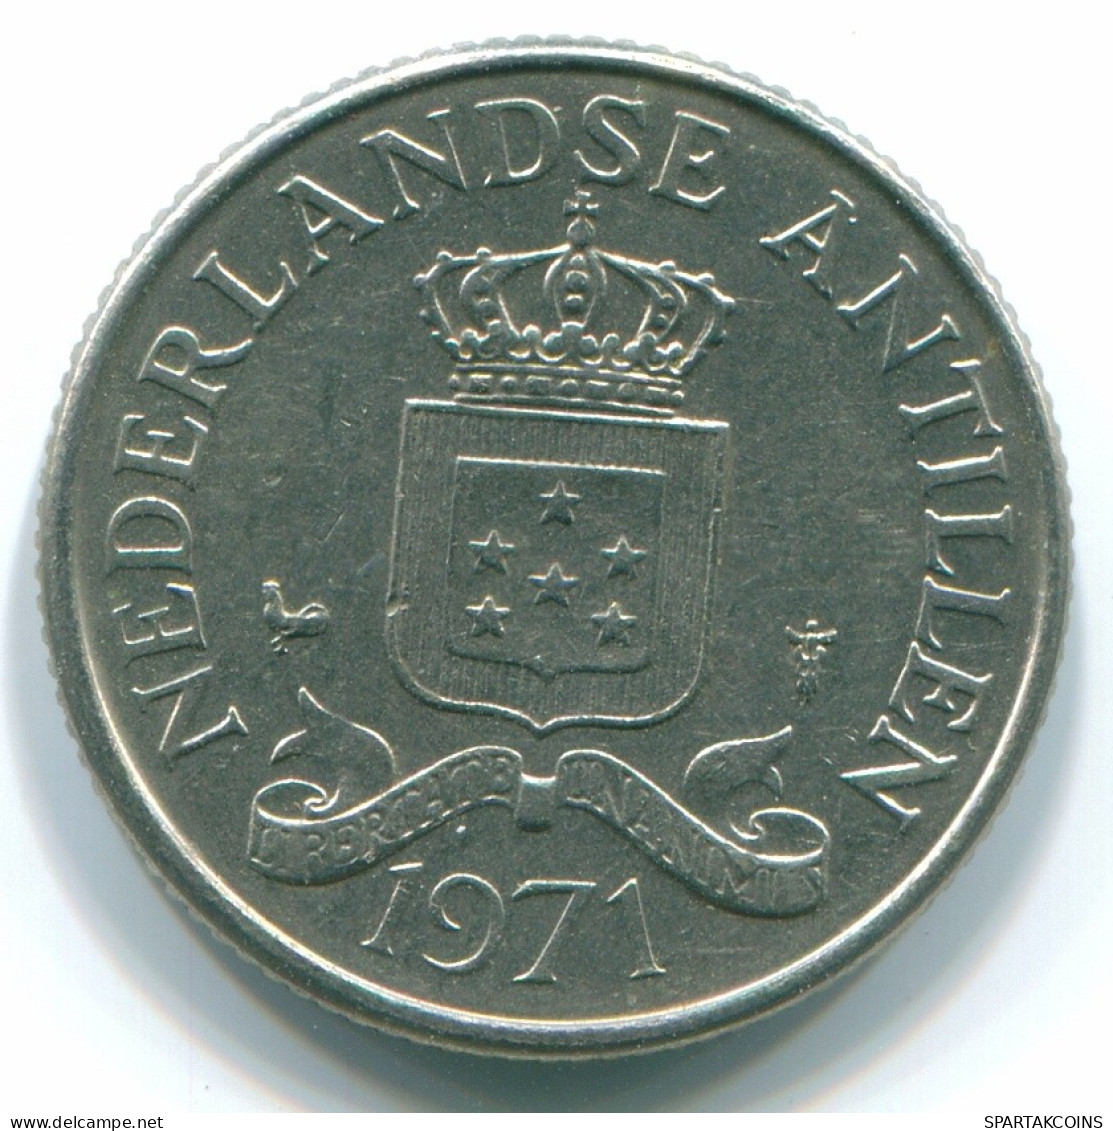 25 CENTS 1971 NIEDERLÄNDISCHE ANTILLEN Nickel Koloniale Münze #S11529.D.A - Antilles Néerlandaises